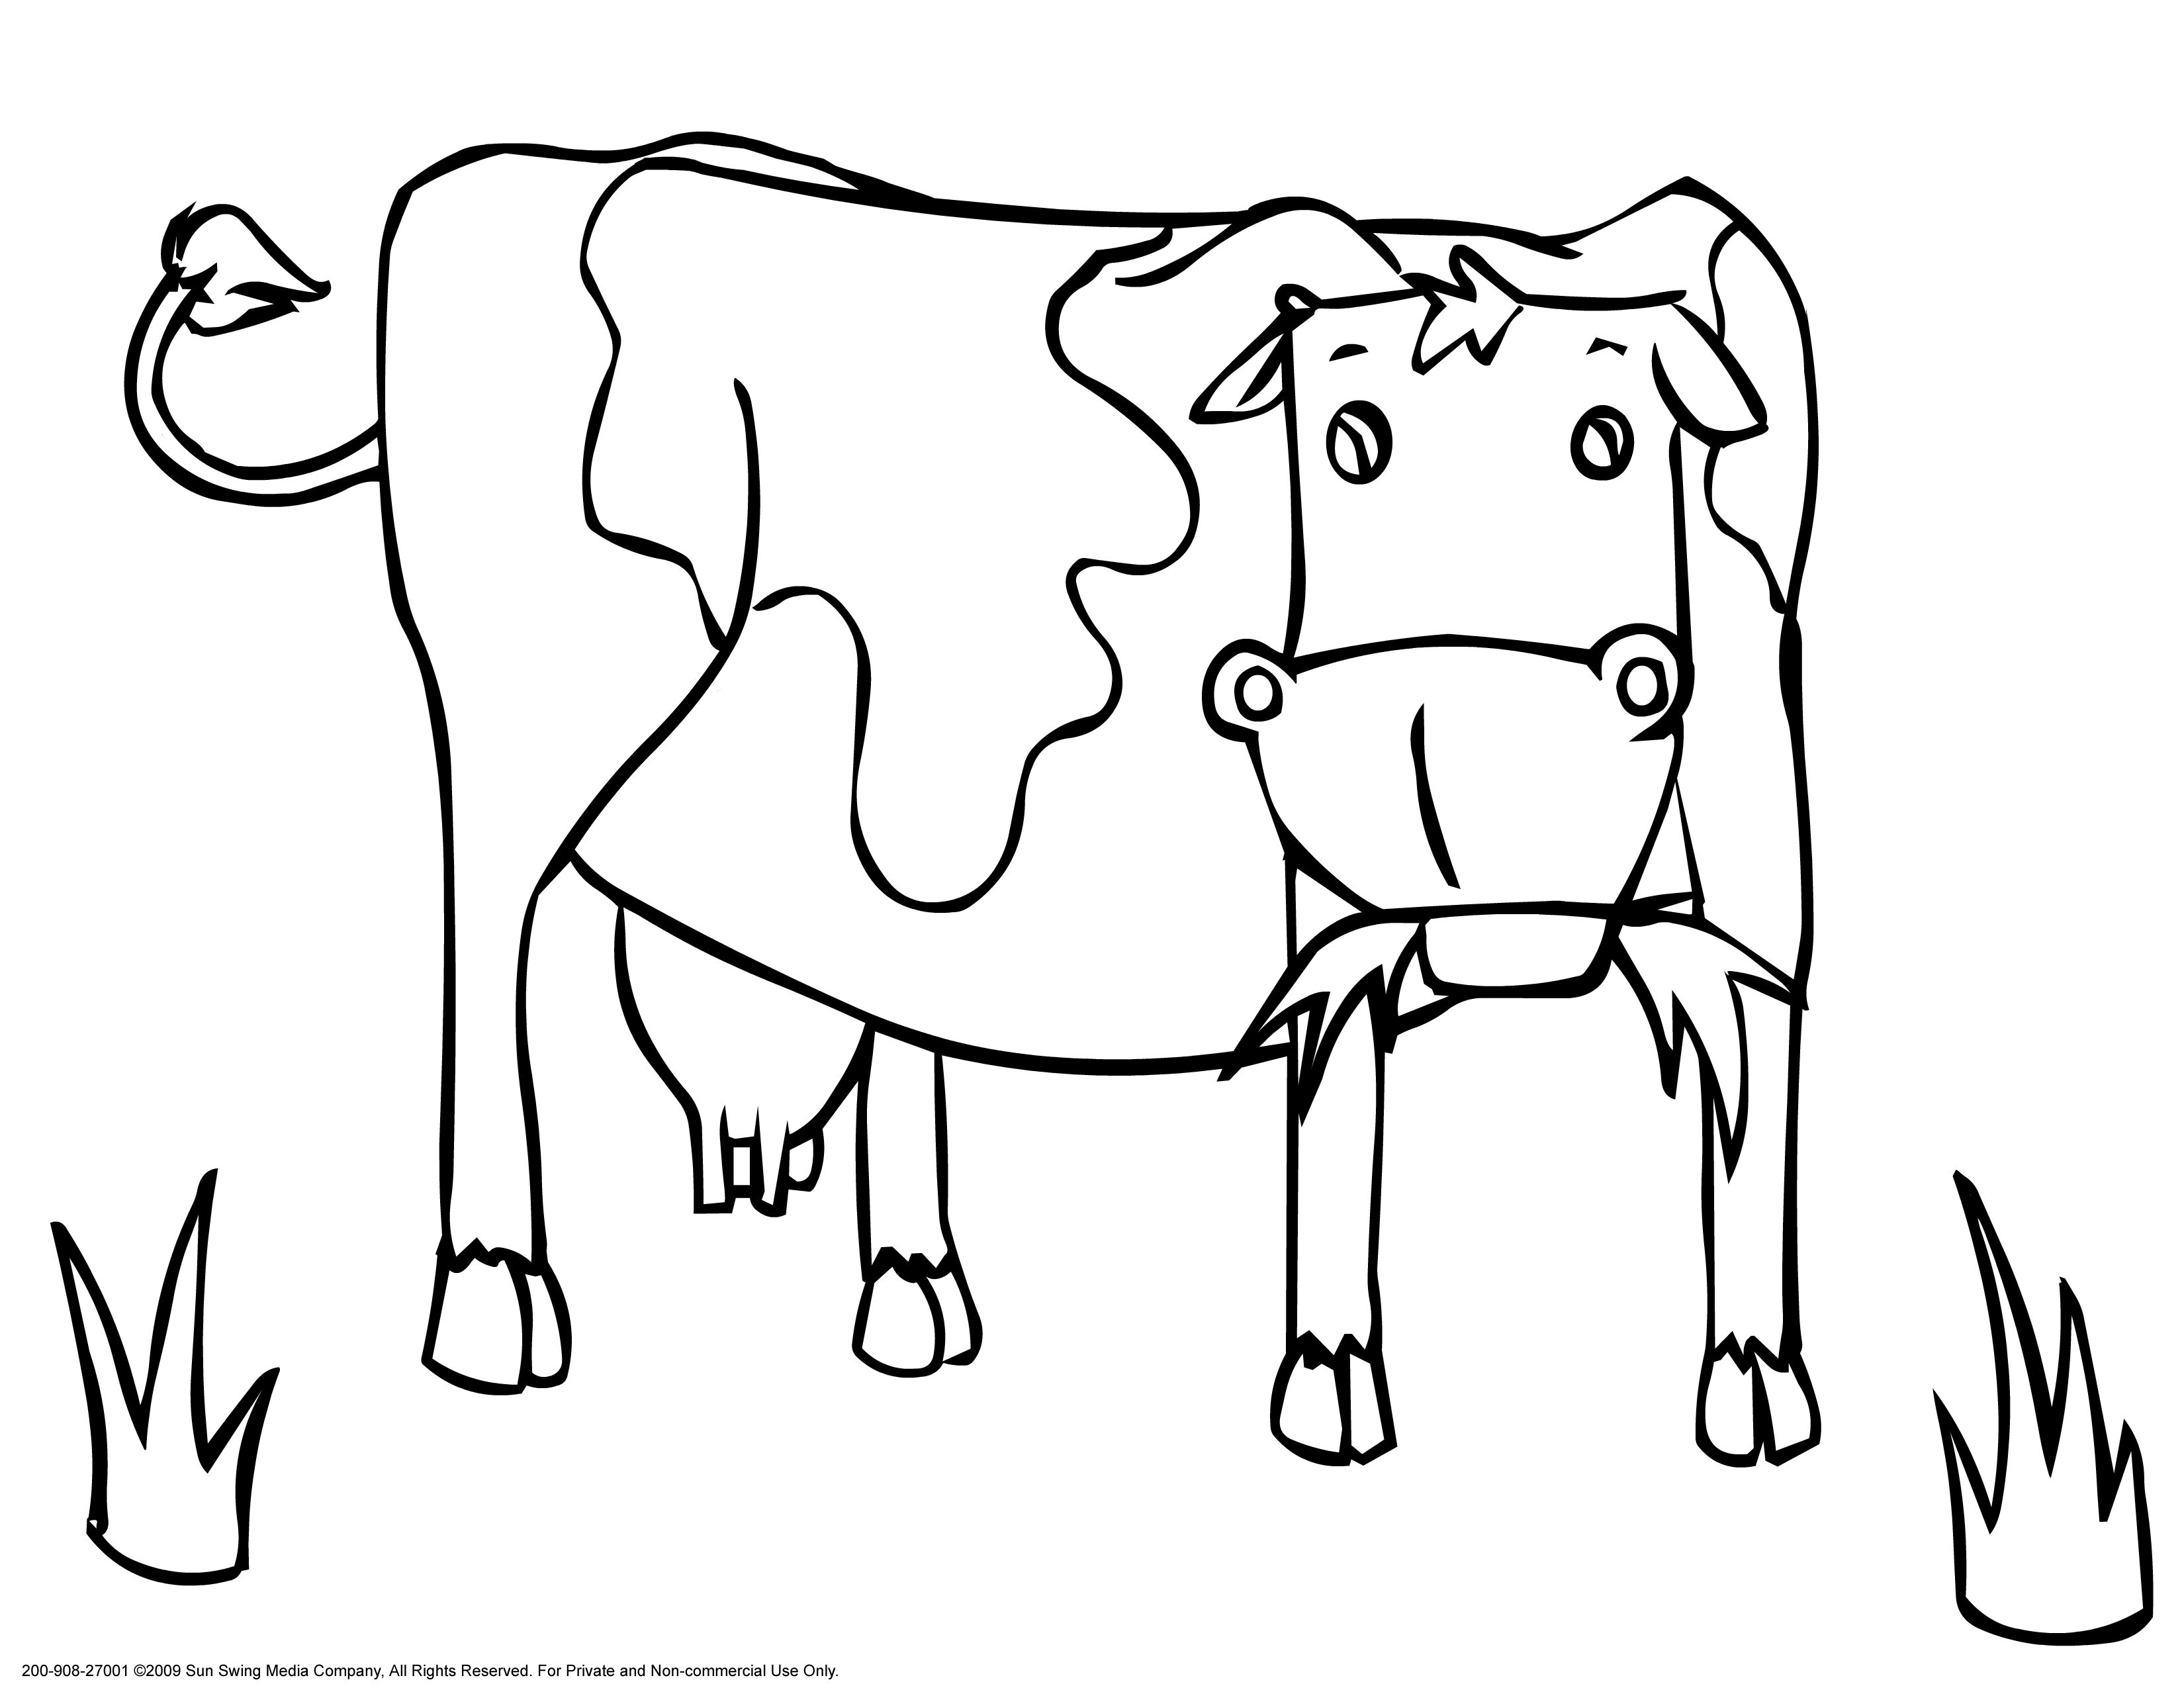 Как нарисовать оранжевую корову. Раскраска корова. Корова раскраска для детей. Рисунок коровы для срисовки. Корова картинка для детей раскраска.